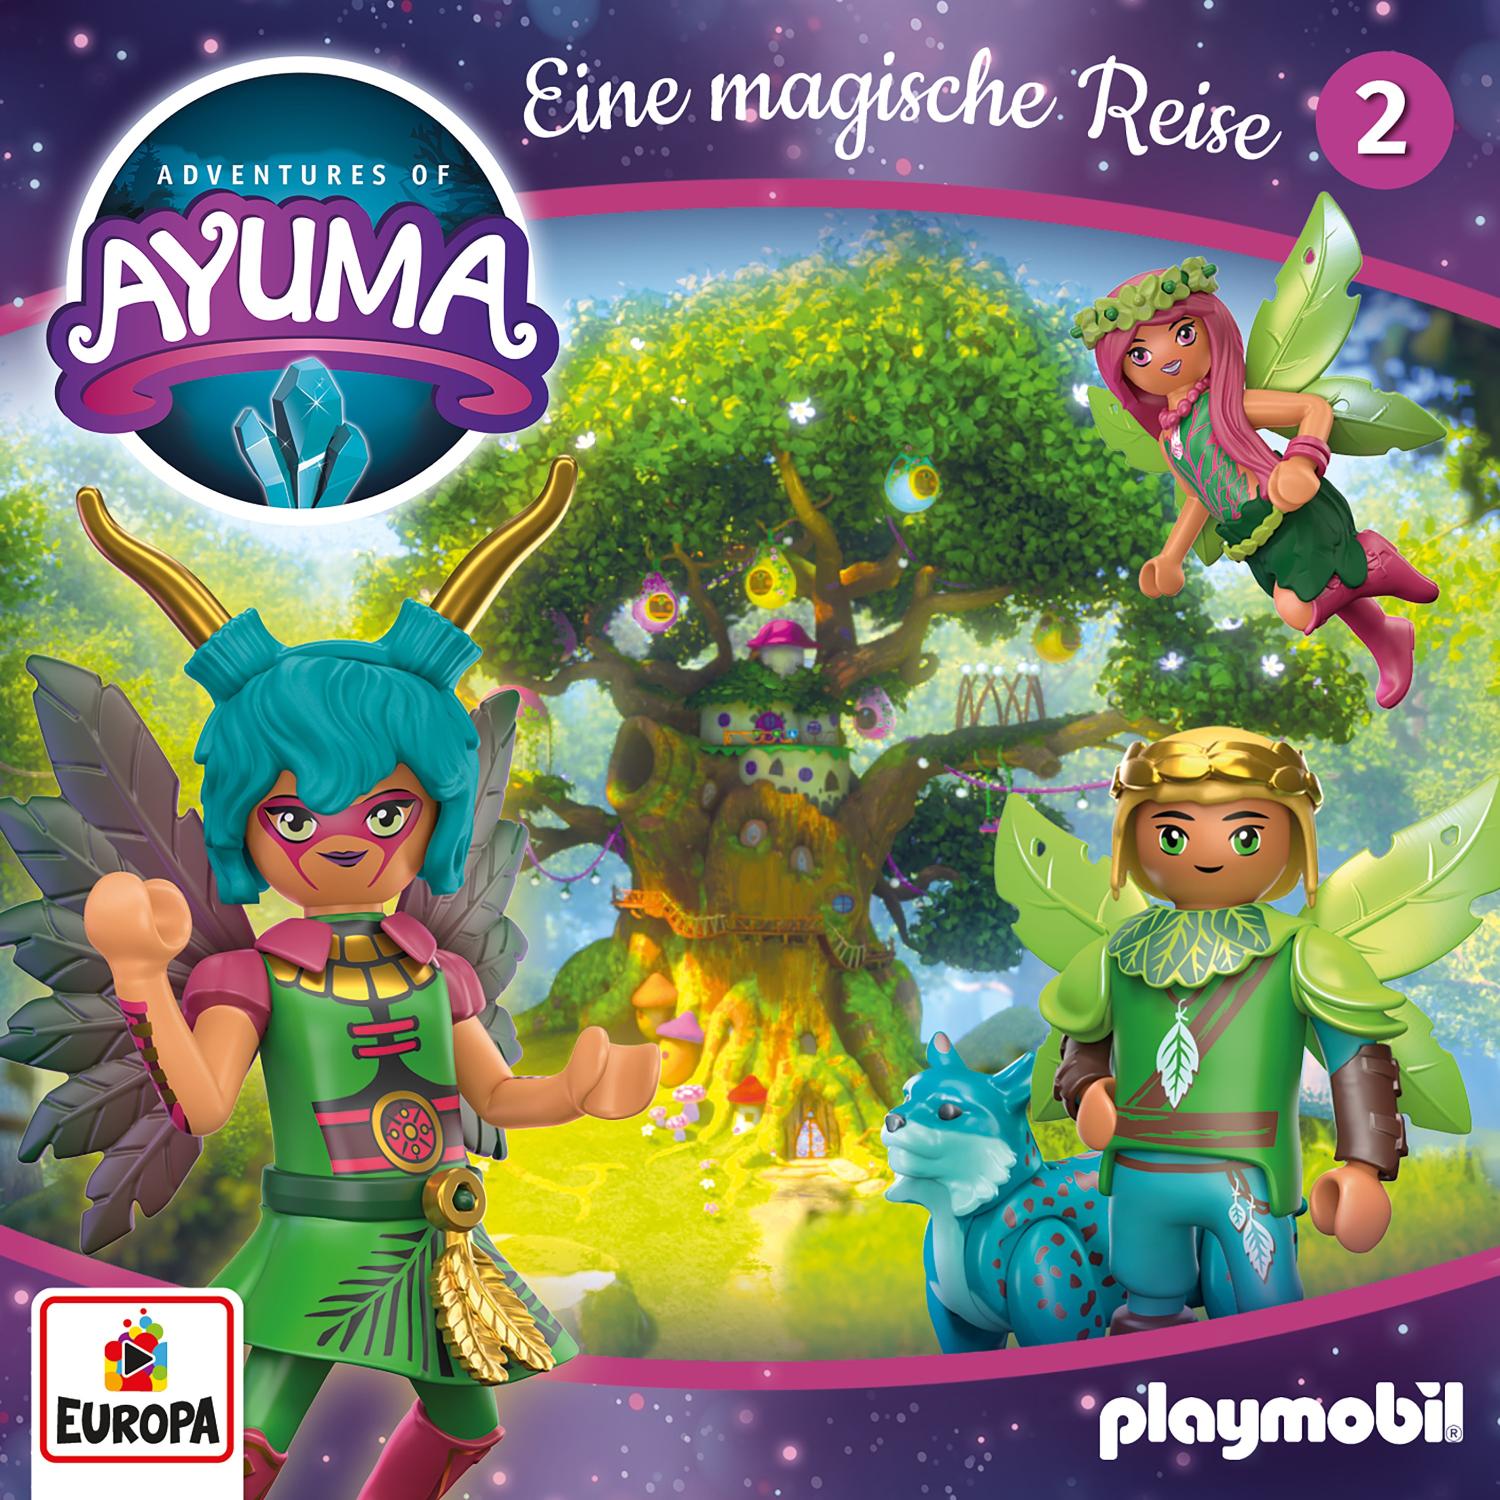 Adventures of Ayuma: Die magische Reise